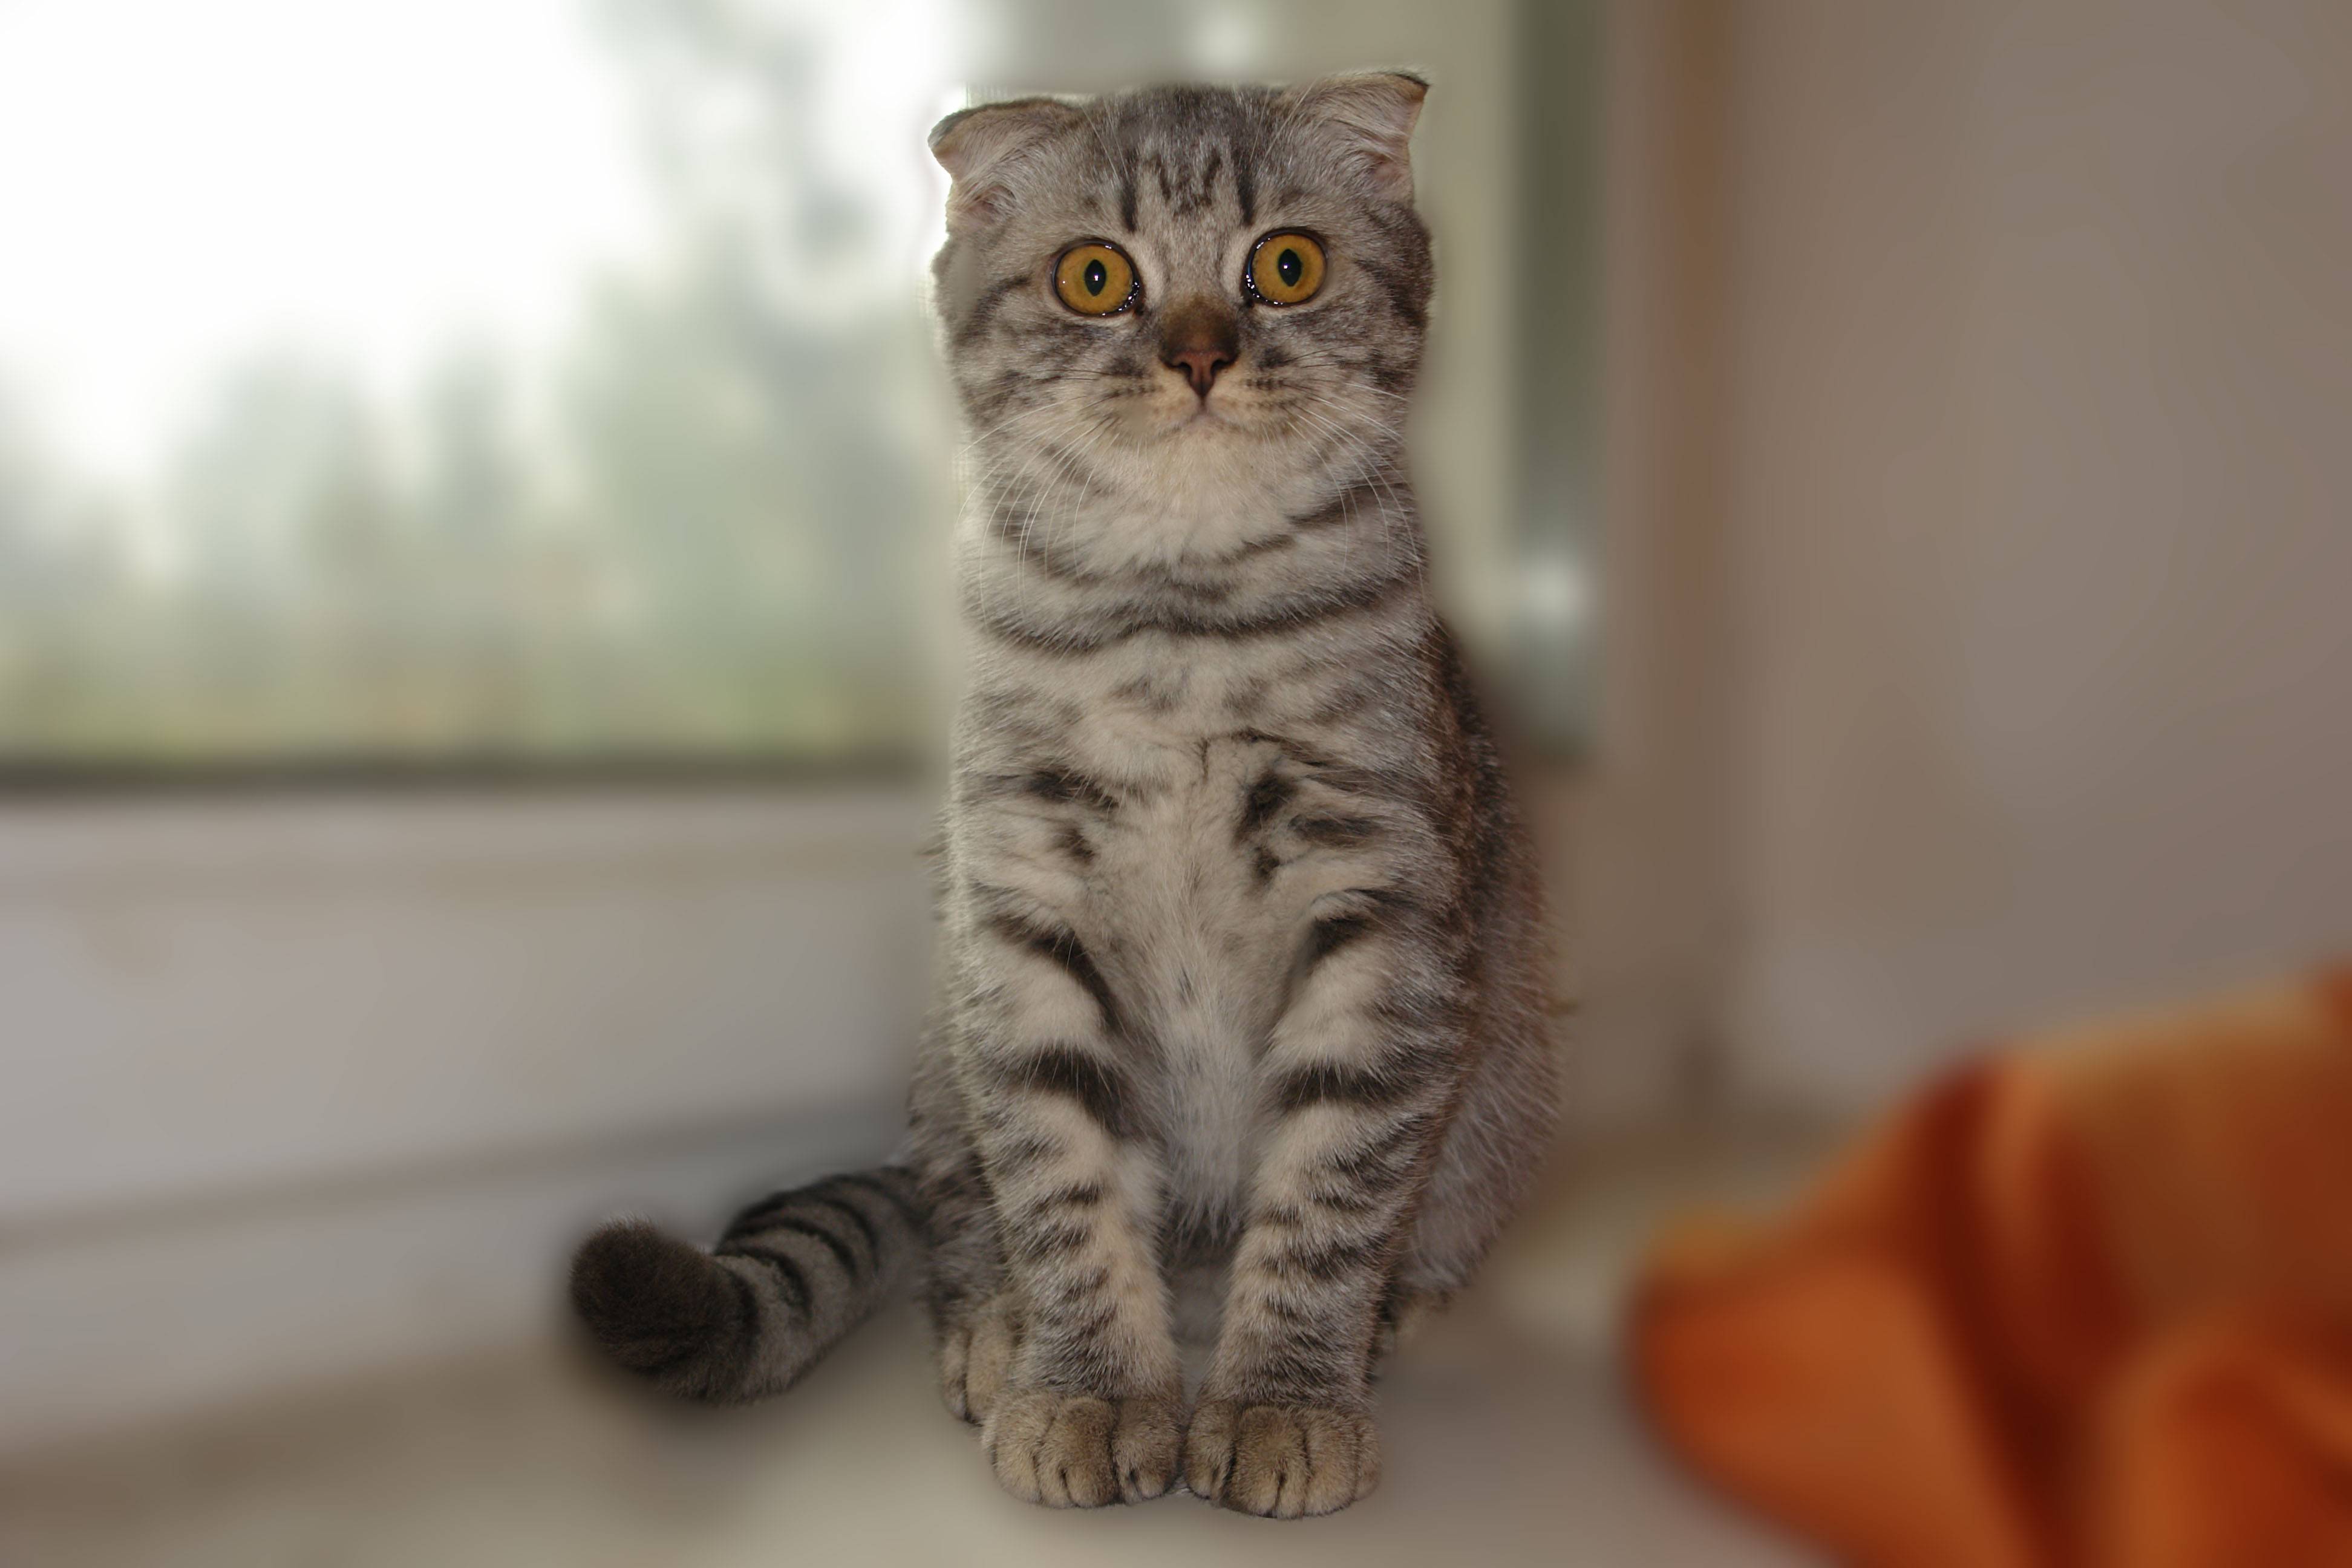 Порода кошки из рекламы вискас